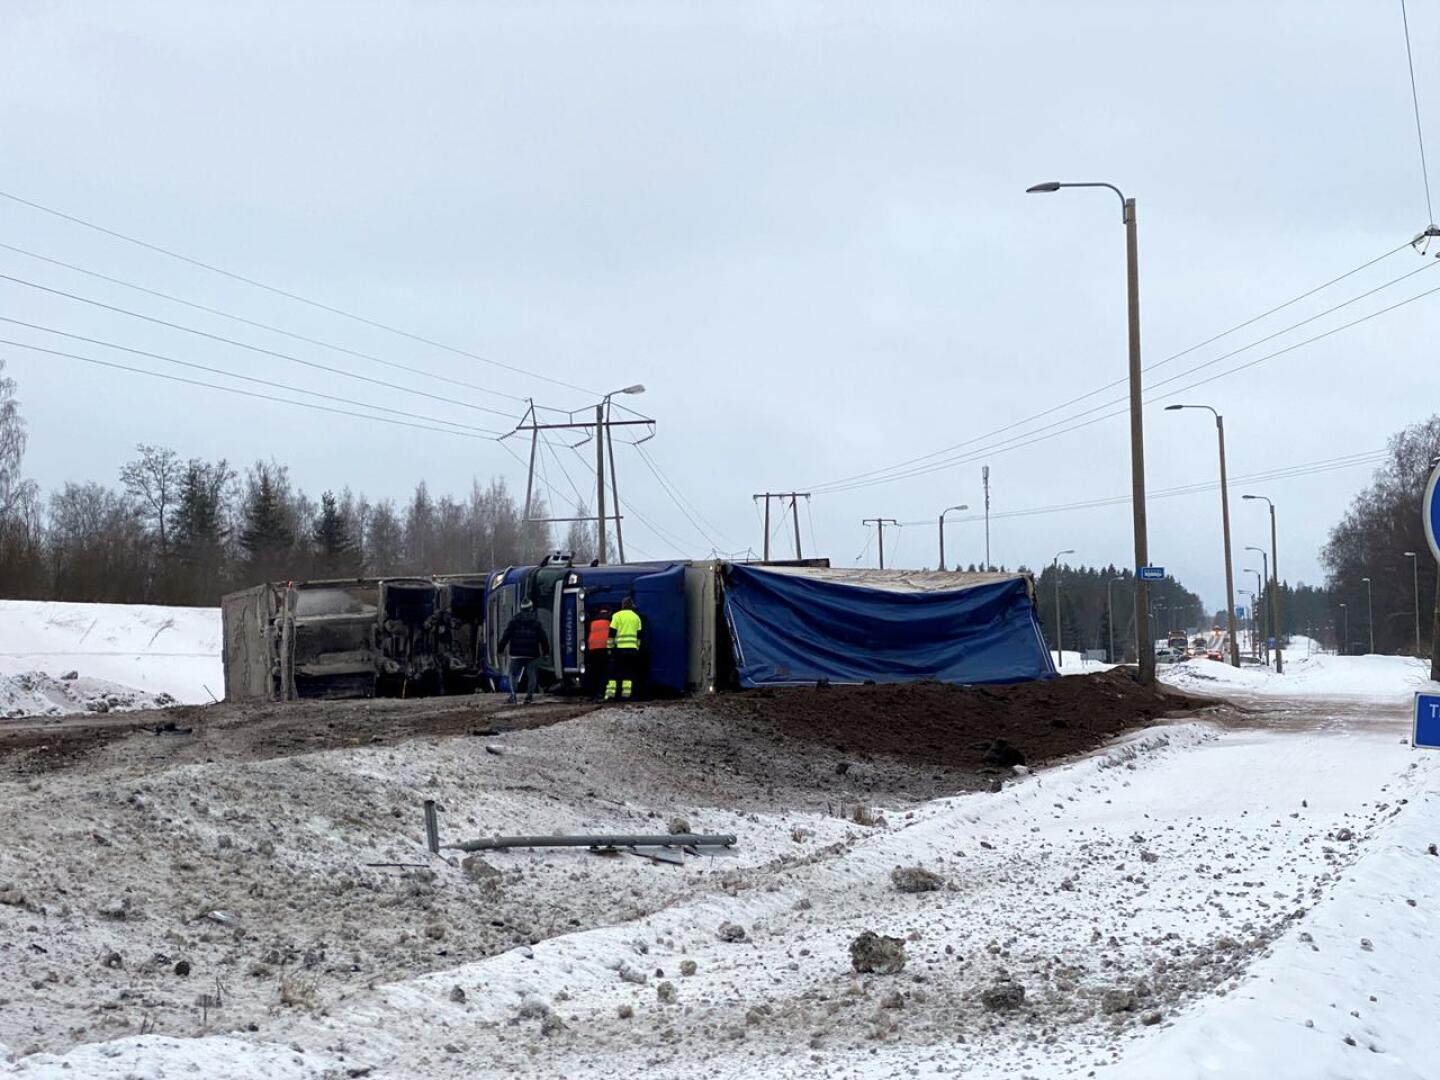 Onnettomuuspaikka oli Kolpintiellä Kilisaaren risteyksen kohdalla. Tielle hajonnut turvelasti kuljetettiin pois pienemmillä autoilla.